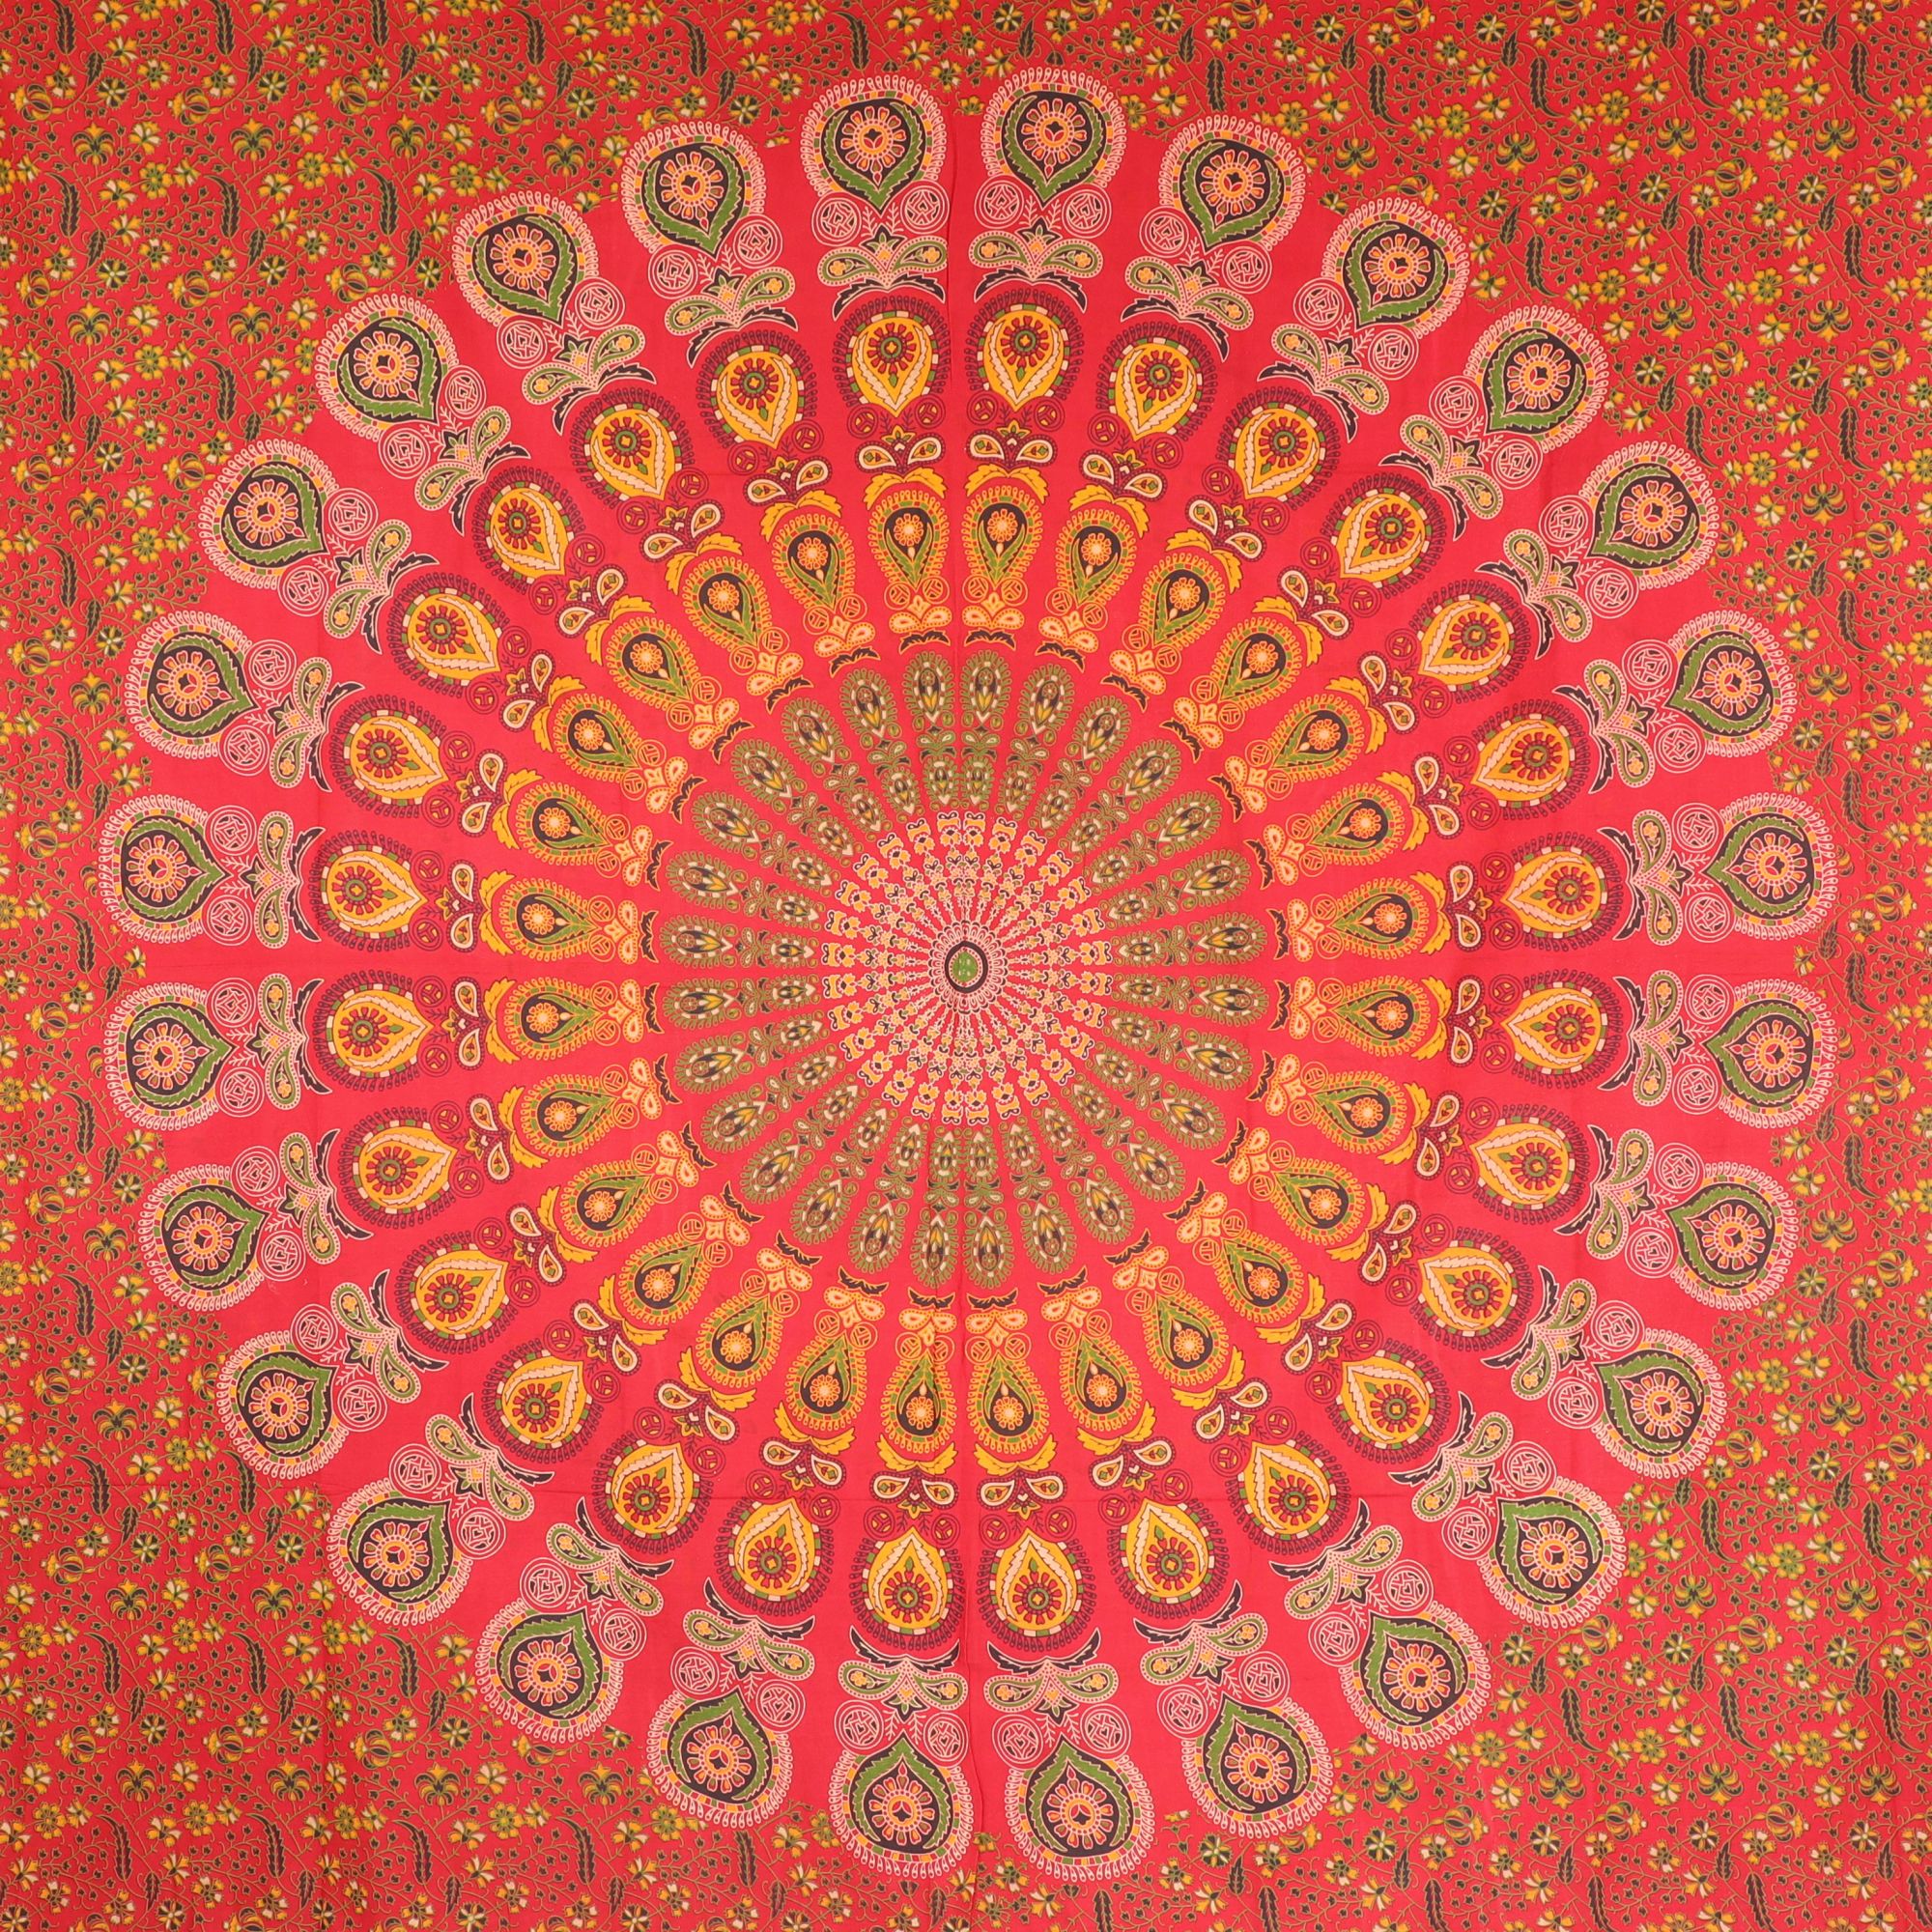 Wandtuch XXL 210x230 - Mandala - 100% Baumwolle - detailreicher indischer Druck - mehrfarbig - dekoratives Tuch, Wandbild, Tagesdecke, Bedcover, Vorhang, Picknick-Decke, Strandtuch